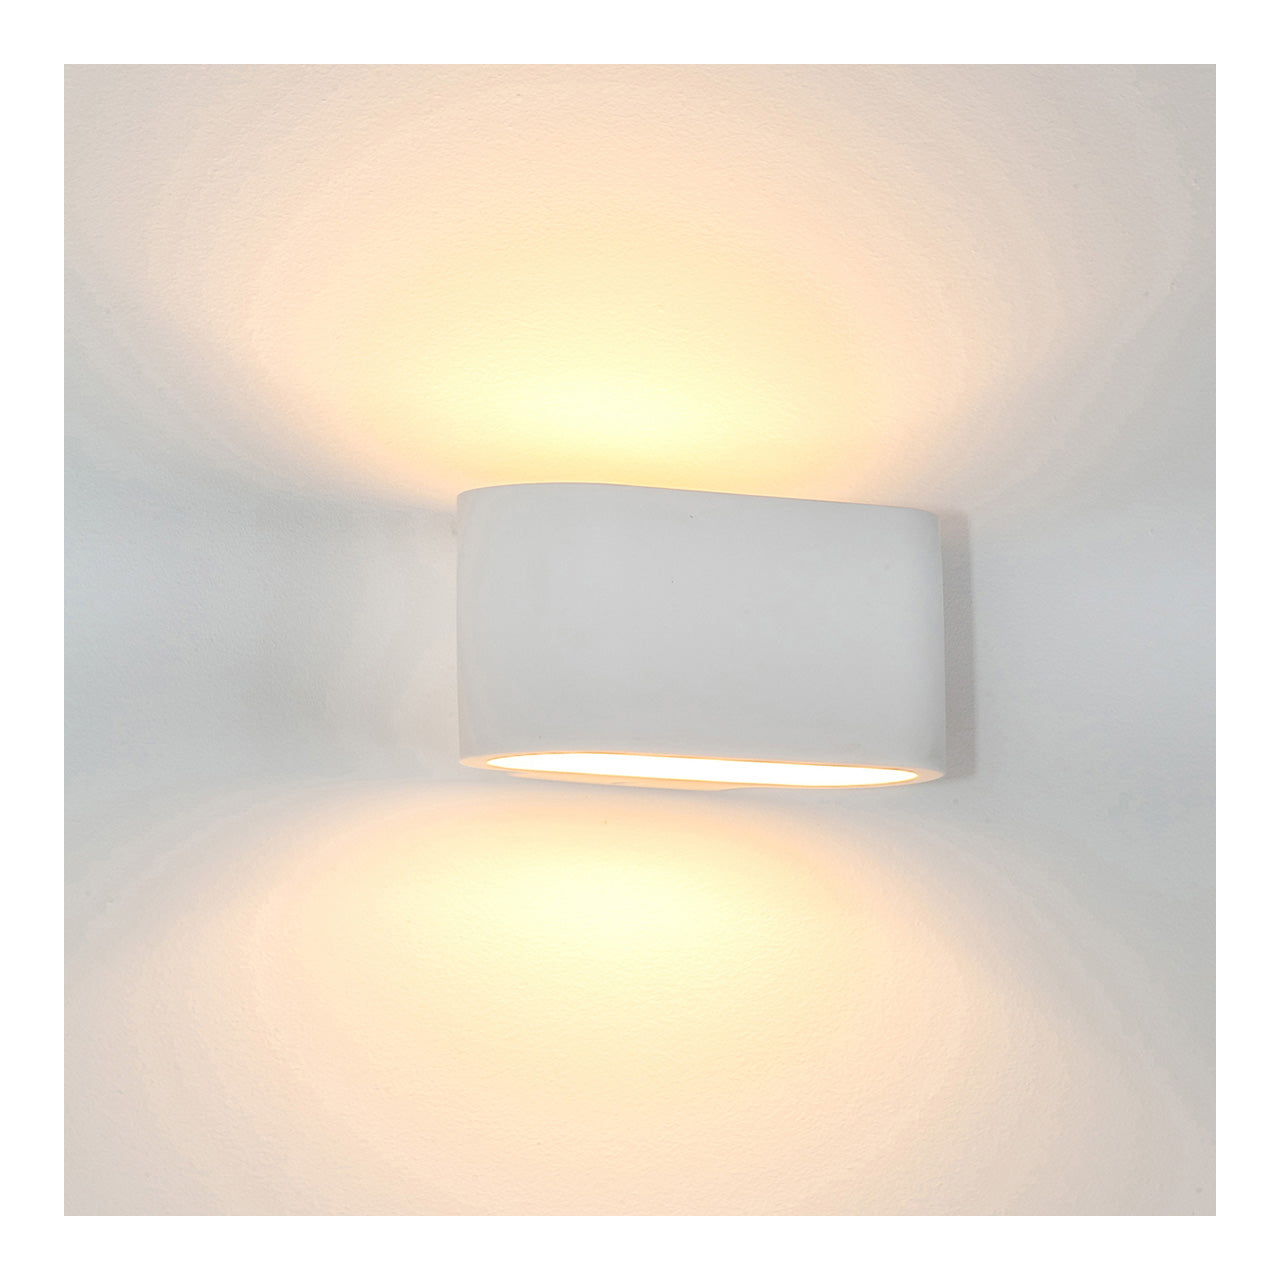 Hv8027 - Concept LED Plaster Light